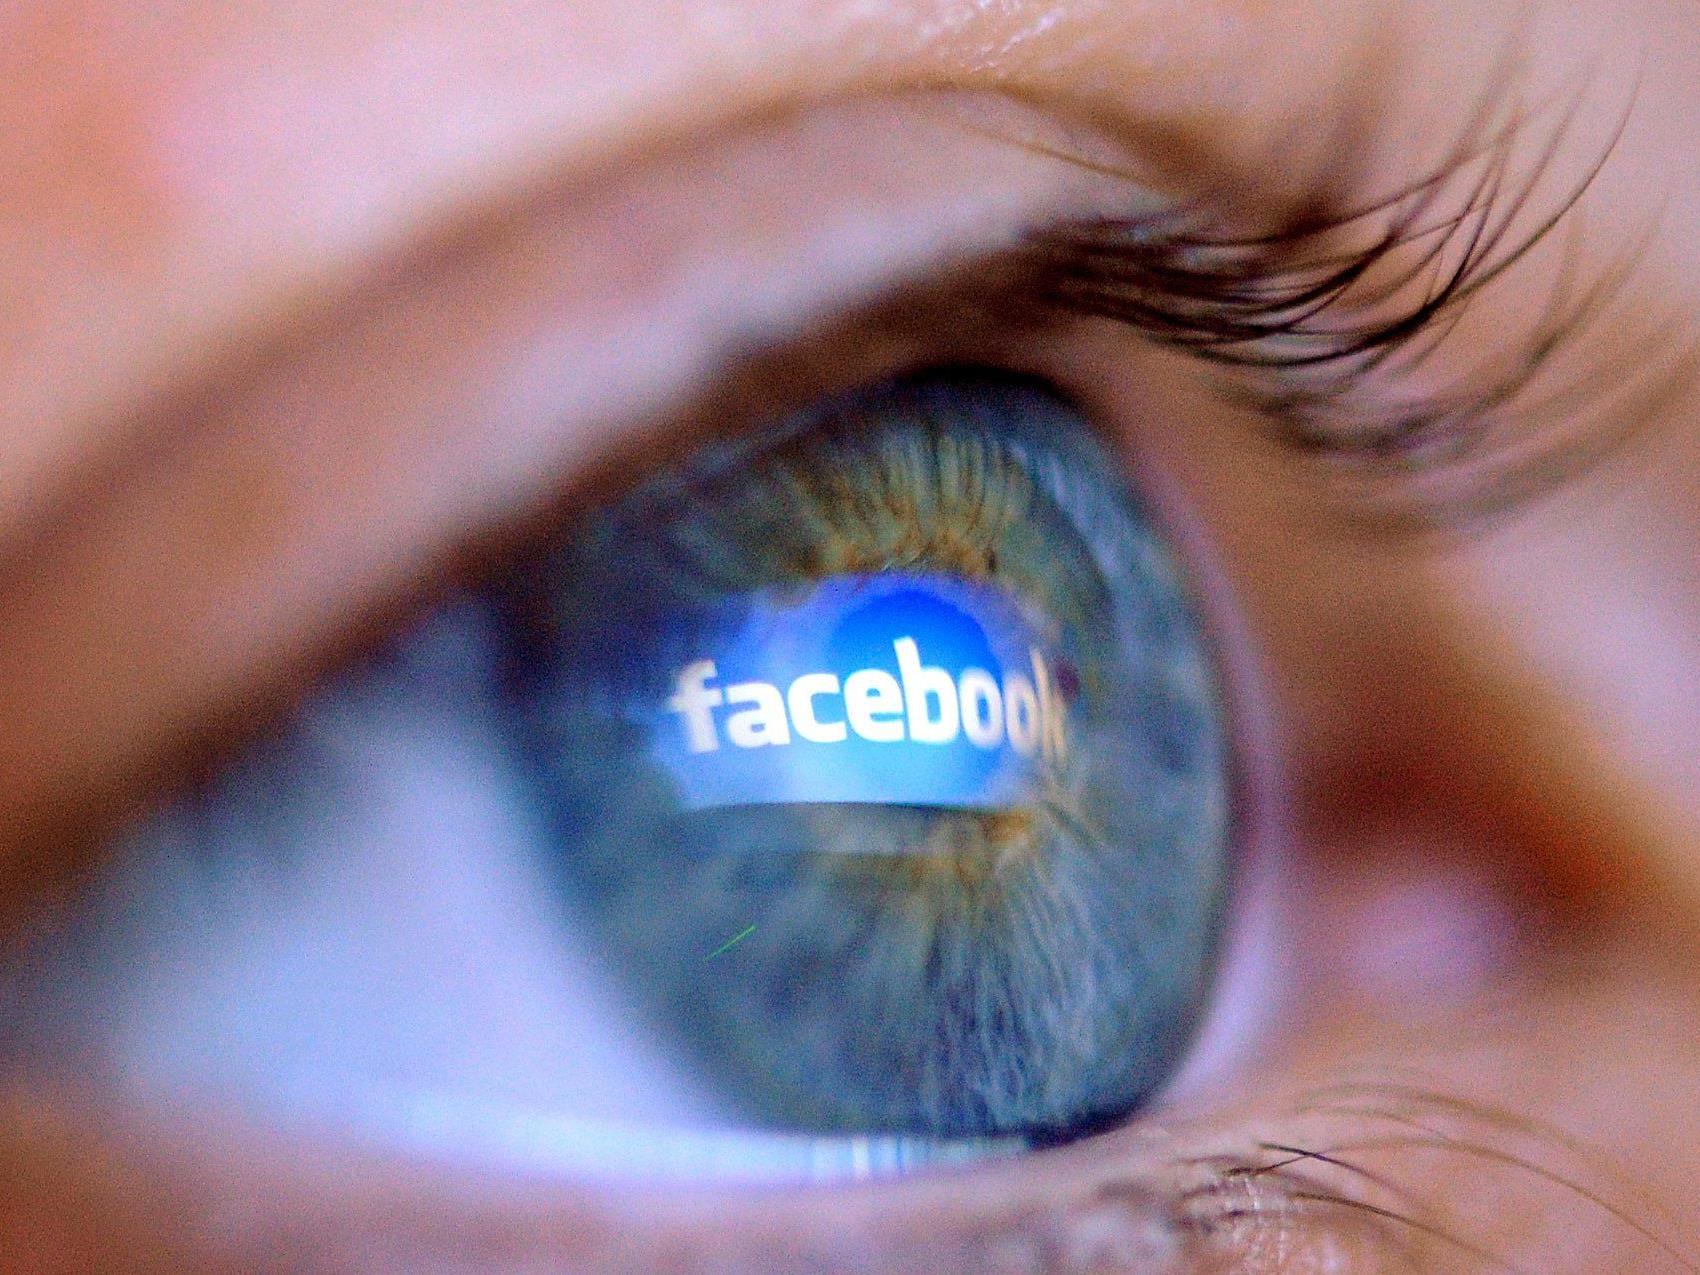 Facebook: Einschränkung der Privatsphäre oft Grund für Account-Löschung.